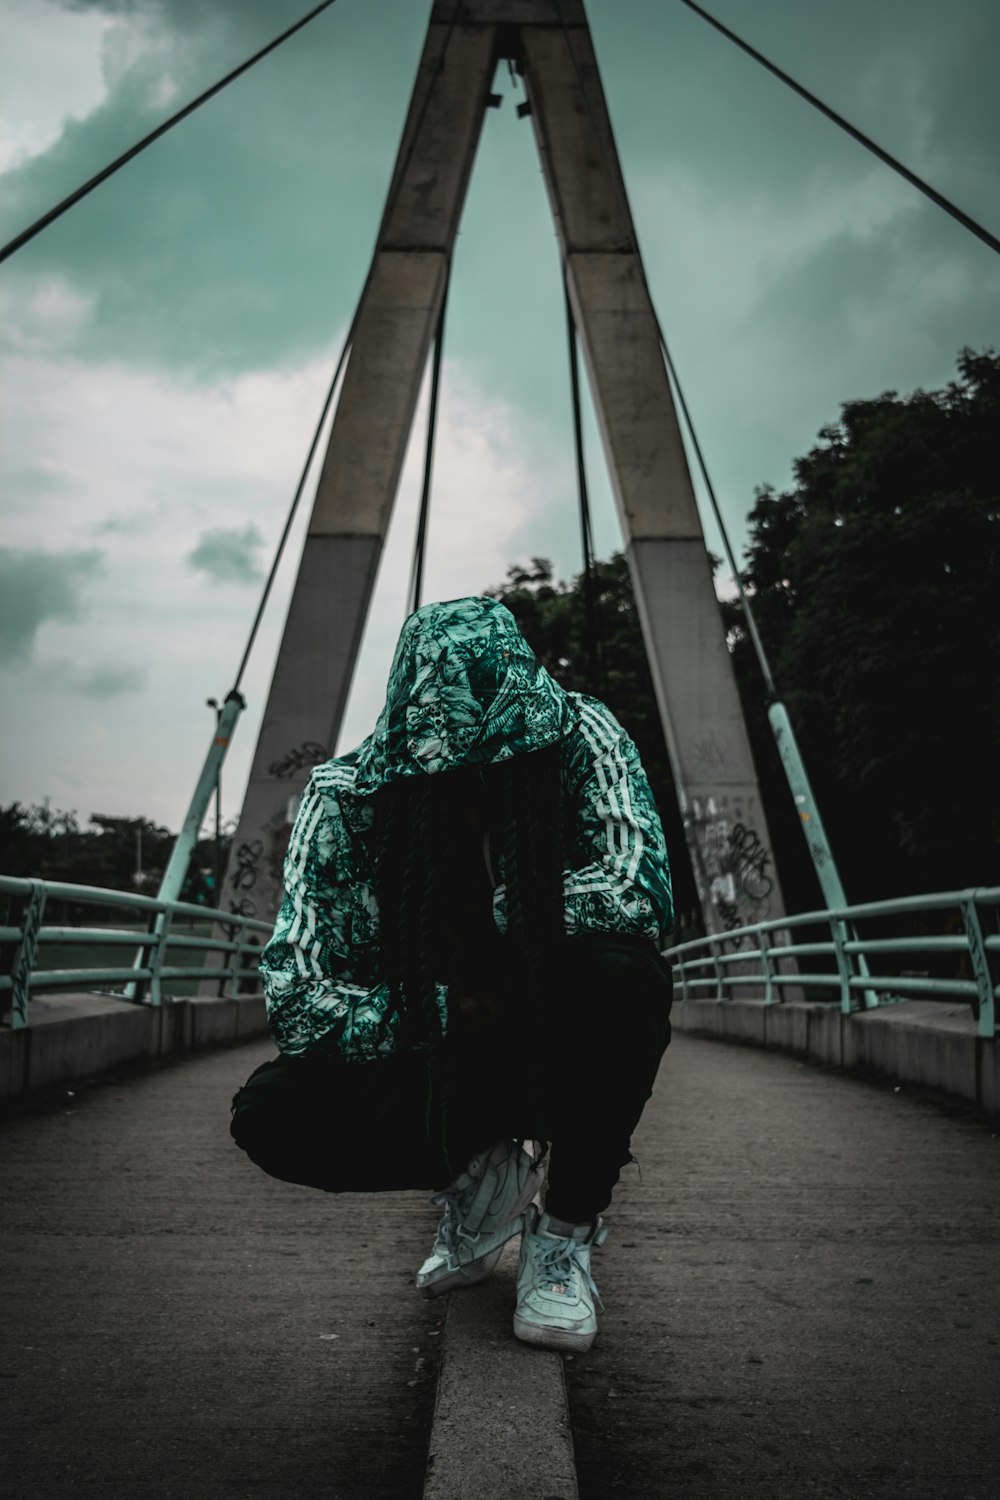 crouching person wearing track hoodie on bridge